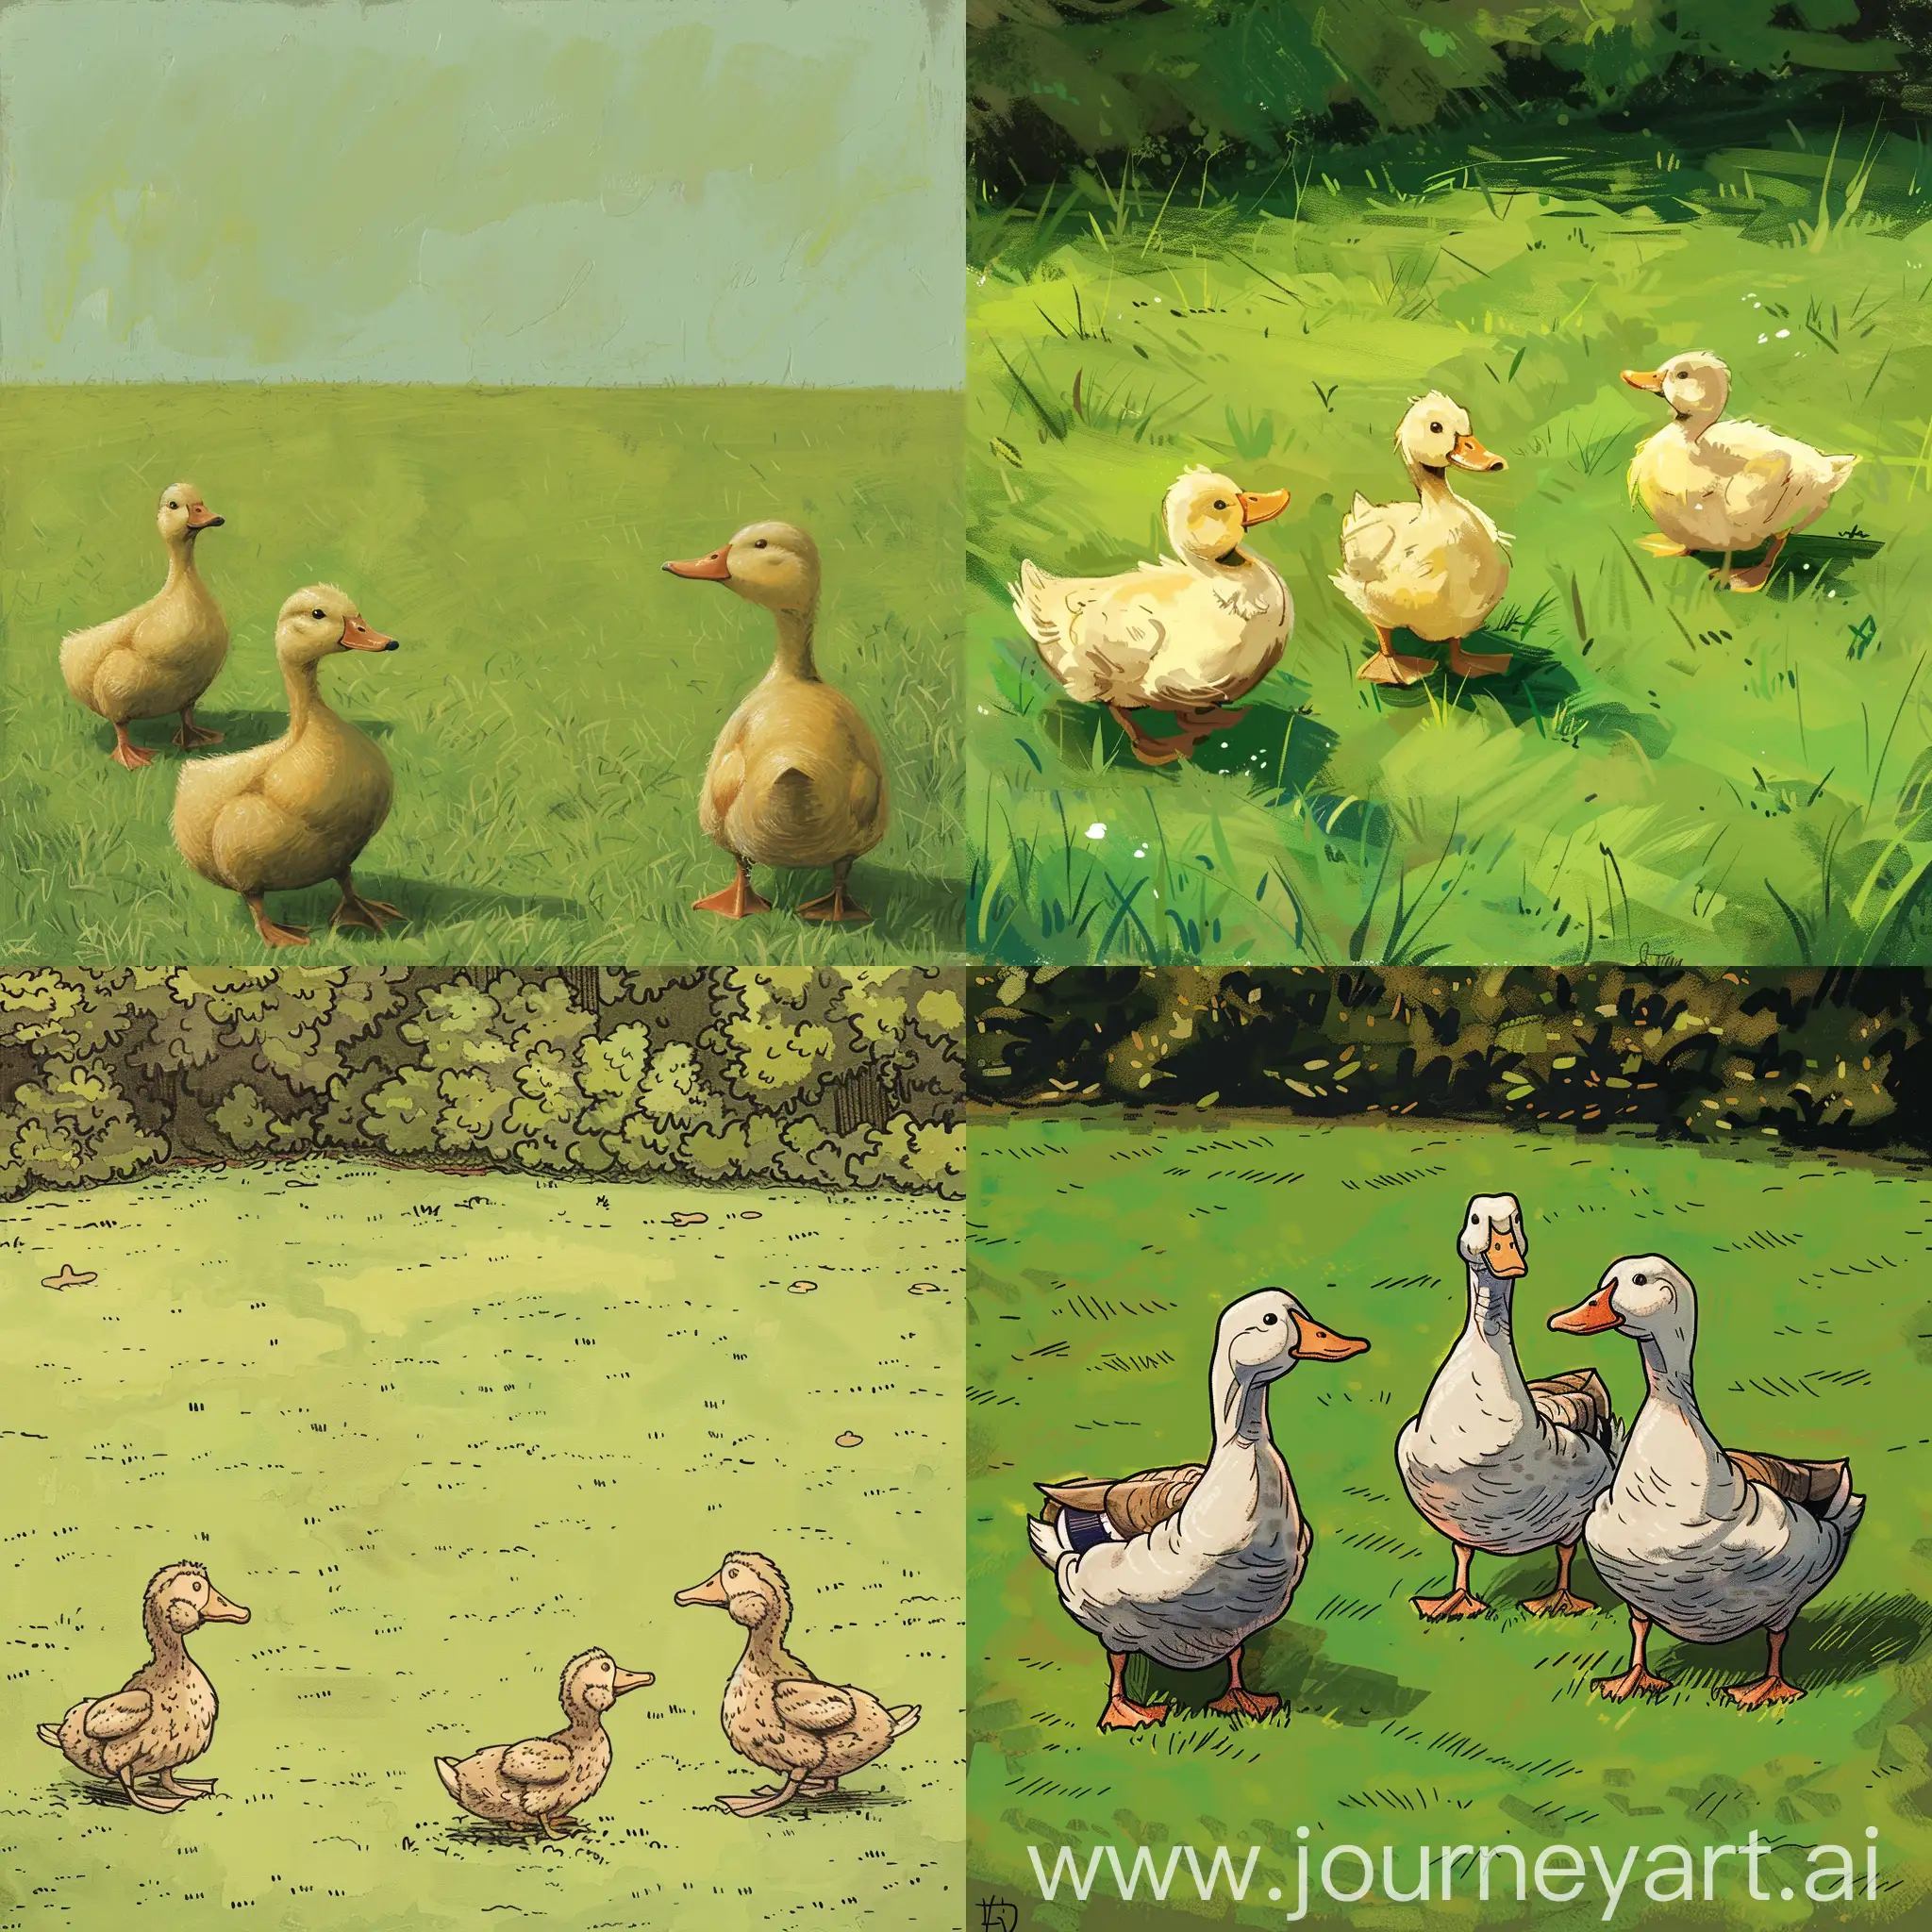 Three-Ducks-on-a-Vibrant-Green-Lawn-in-Miniature-Format